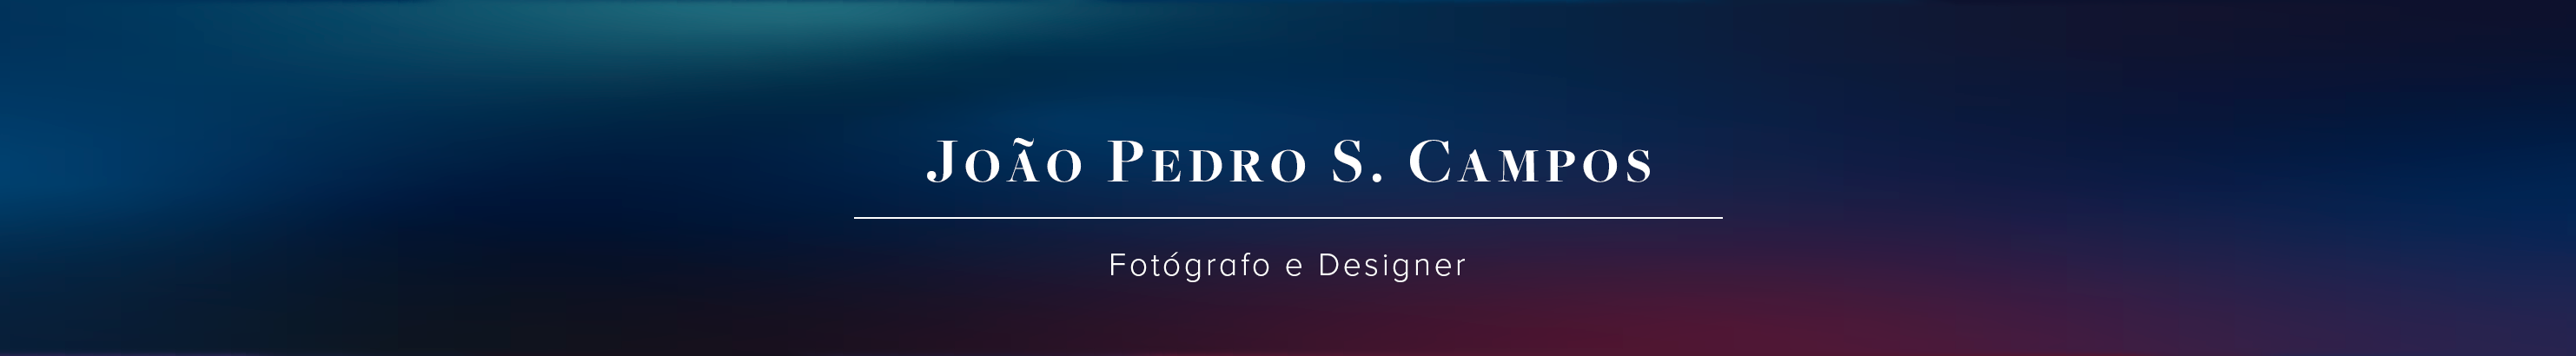 Bannière de profil de João Pedro S. Campos